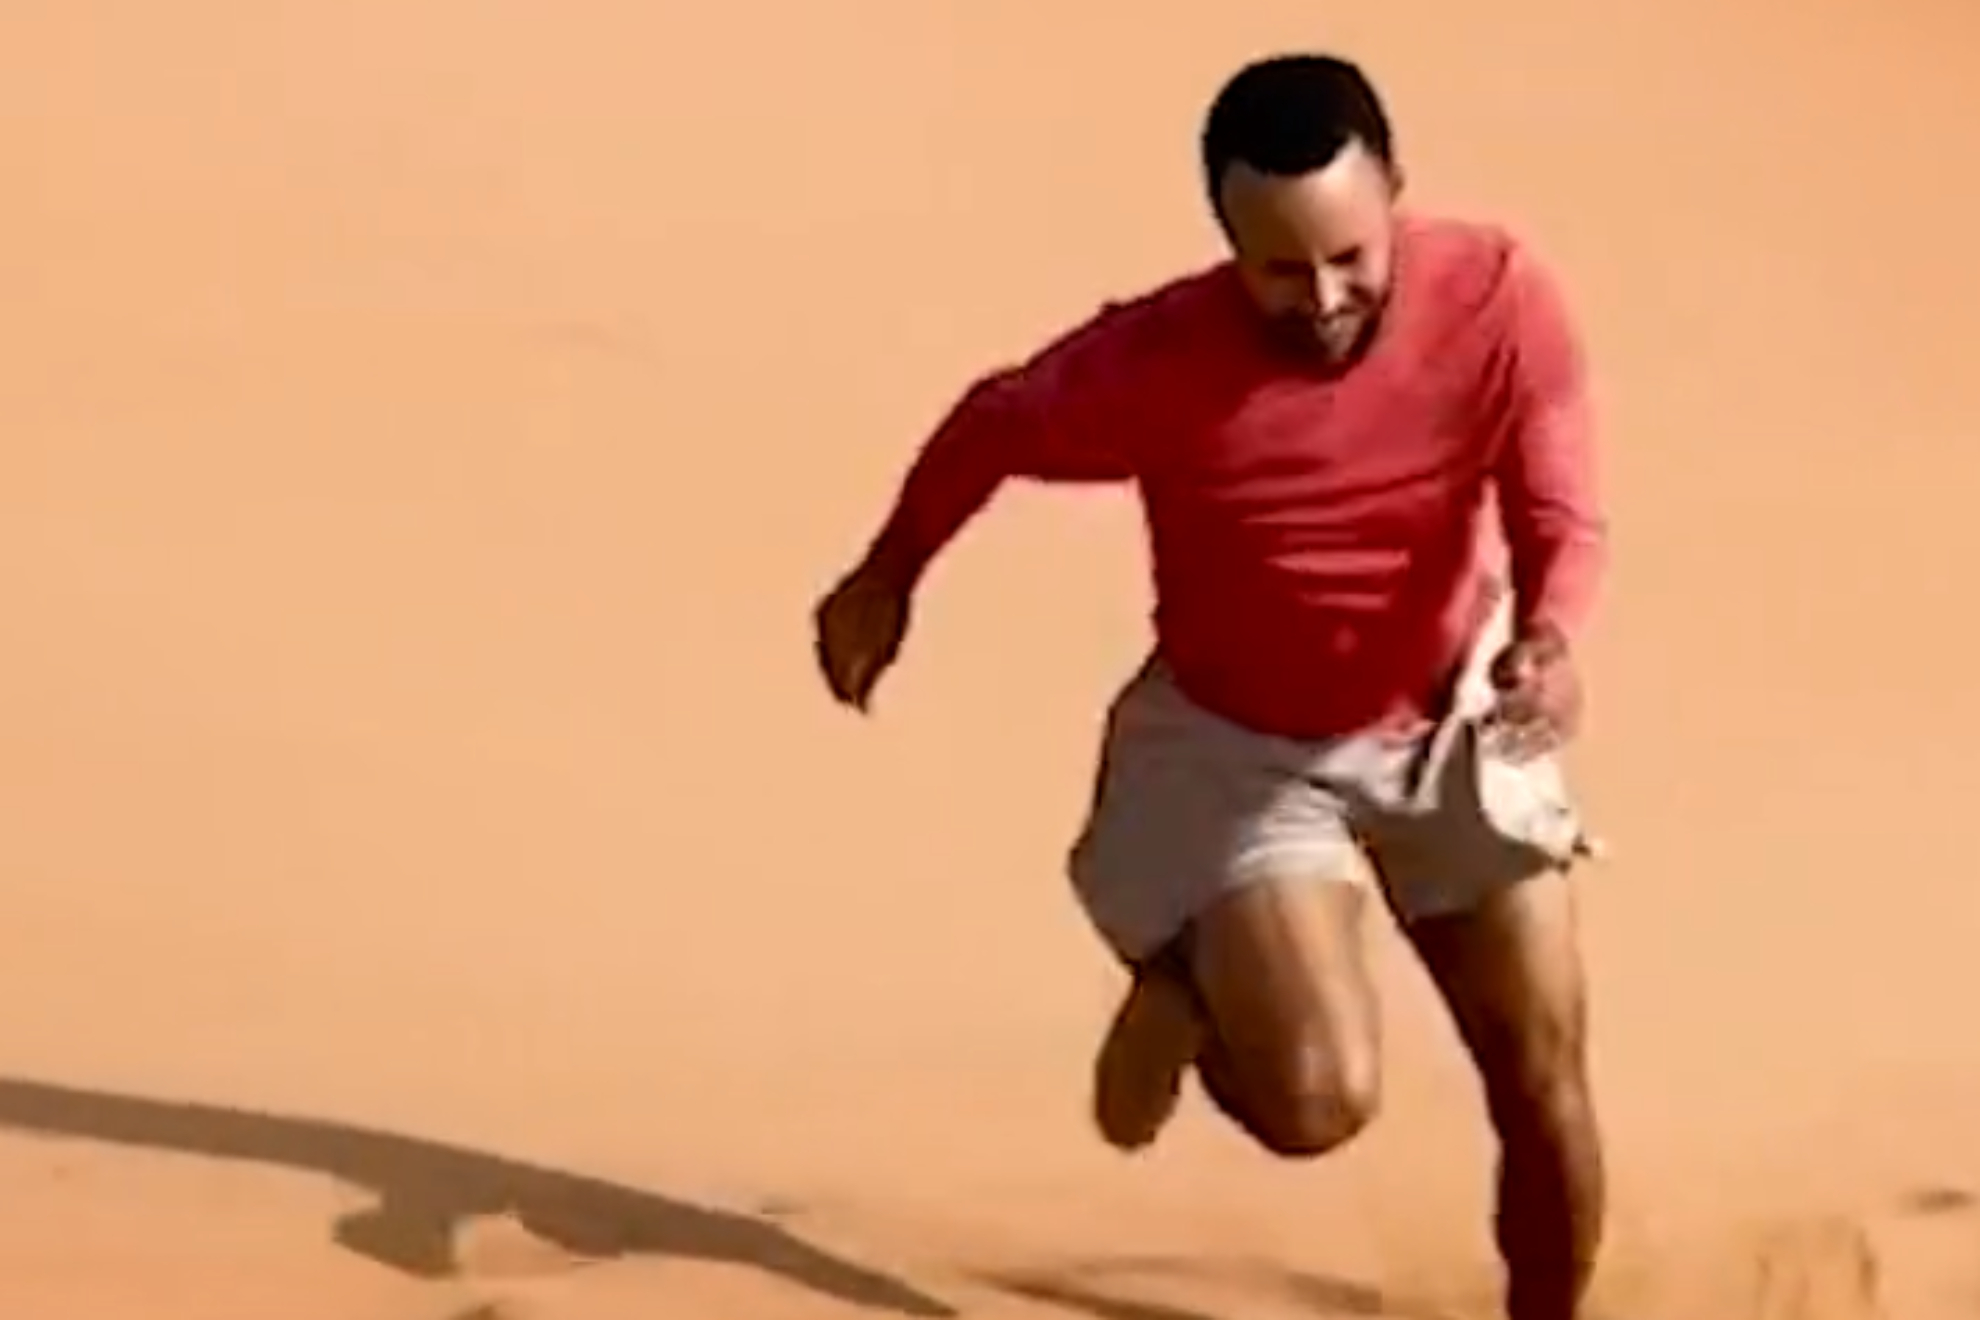 Los entrenamientos de Curry: de los 5 minutos sin fallar un triple a subir dunas en Dubái